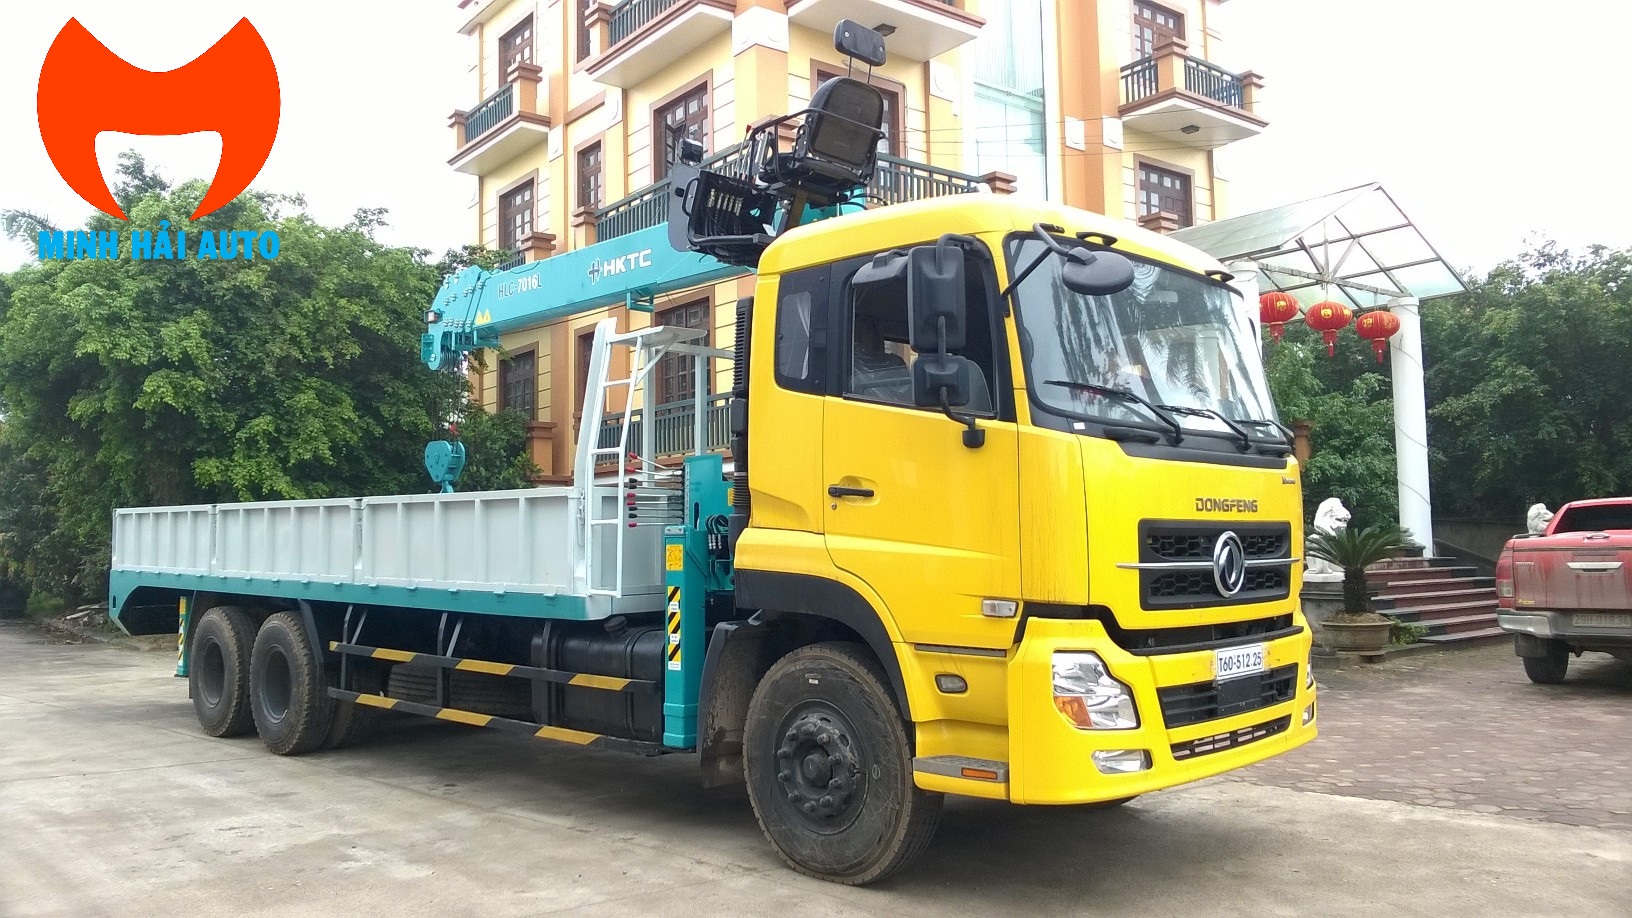 Xe tải gắn cẩu 7 tấn HKTC lắp Dongfeng